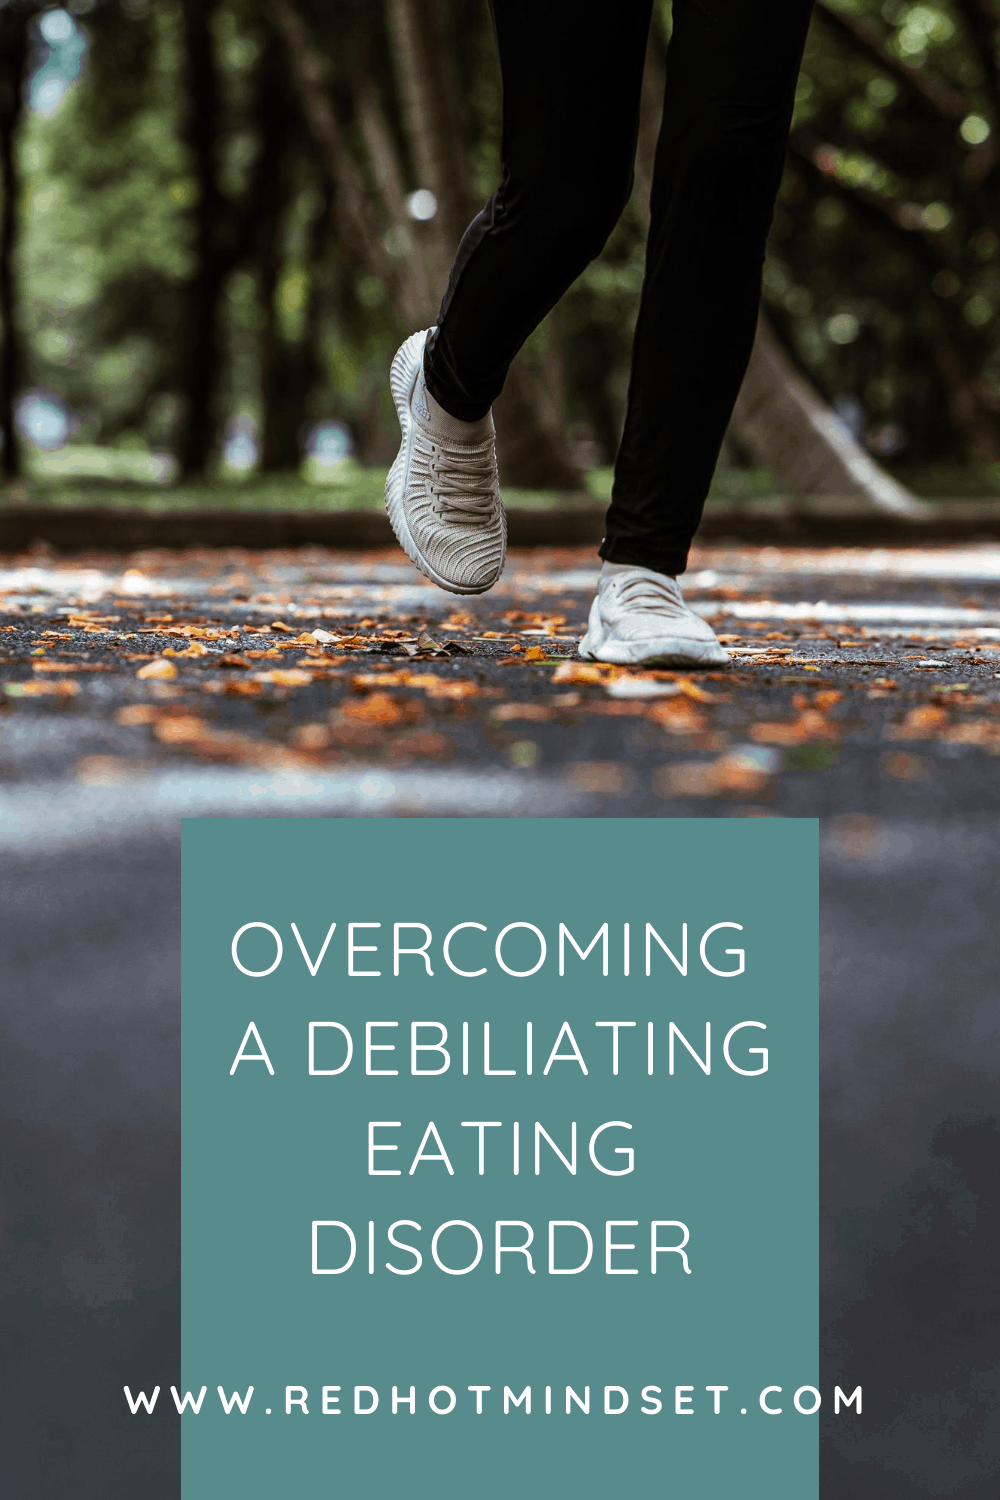 Breaking a Defining Eating Disorder & Crushing Running Goals